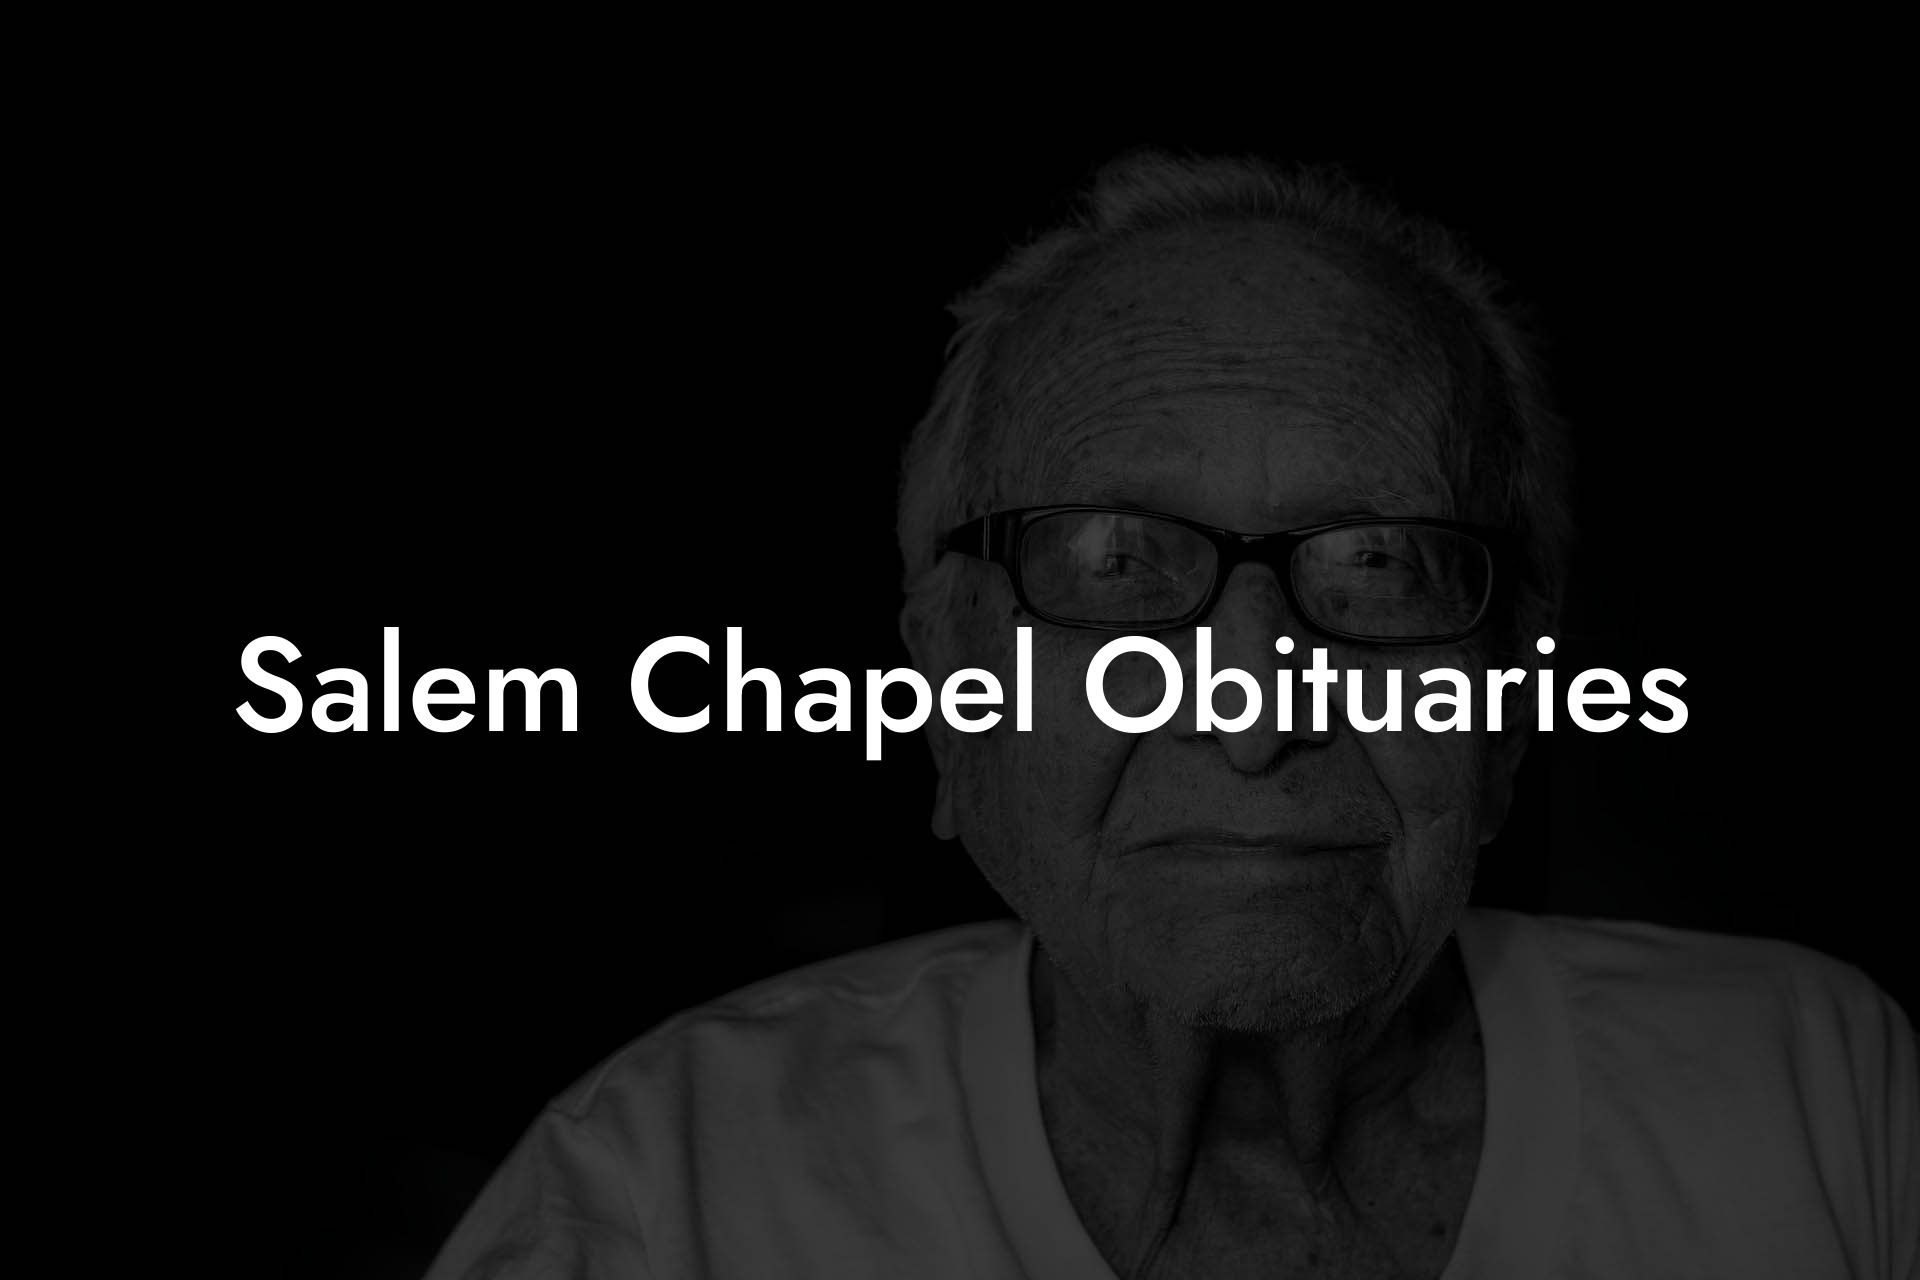 Salem Chapel Obituaries